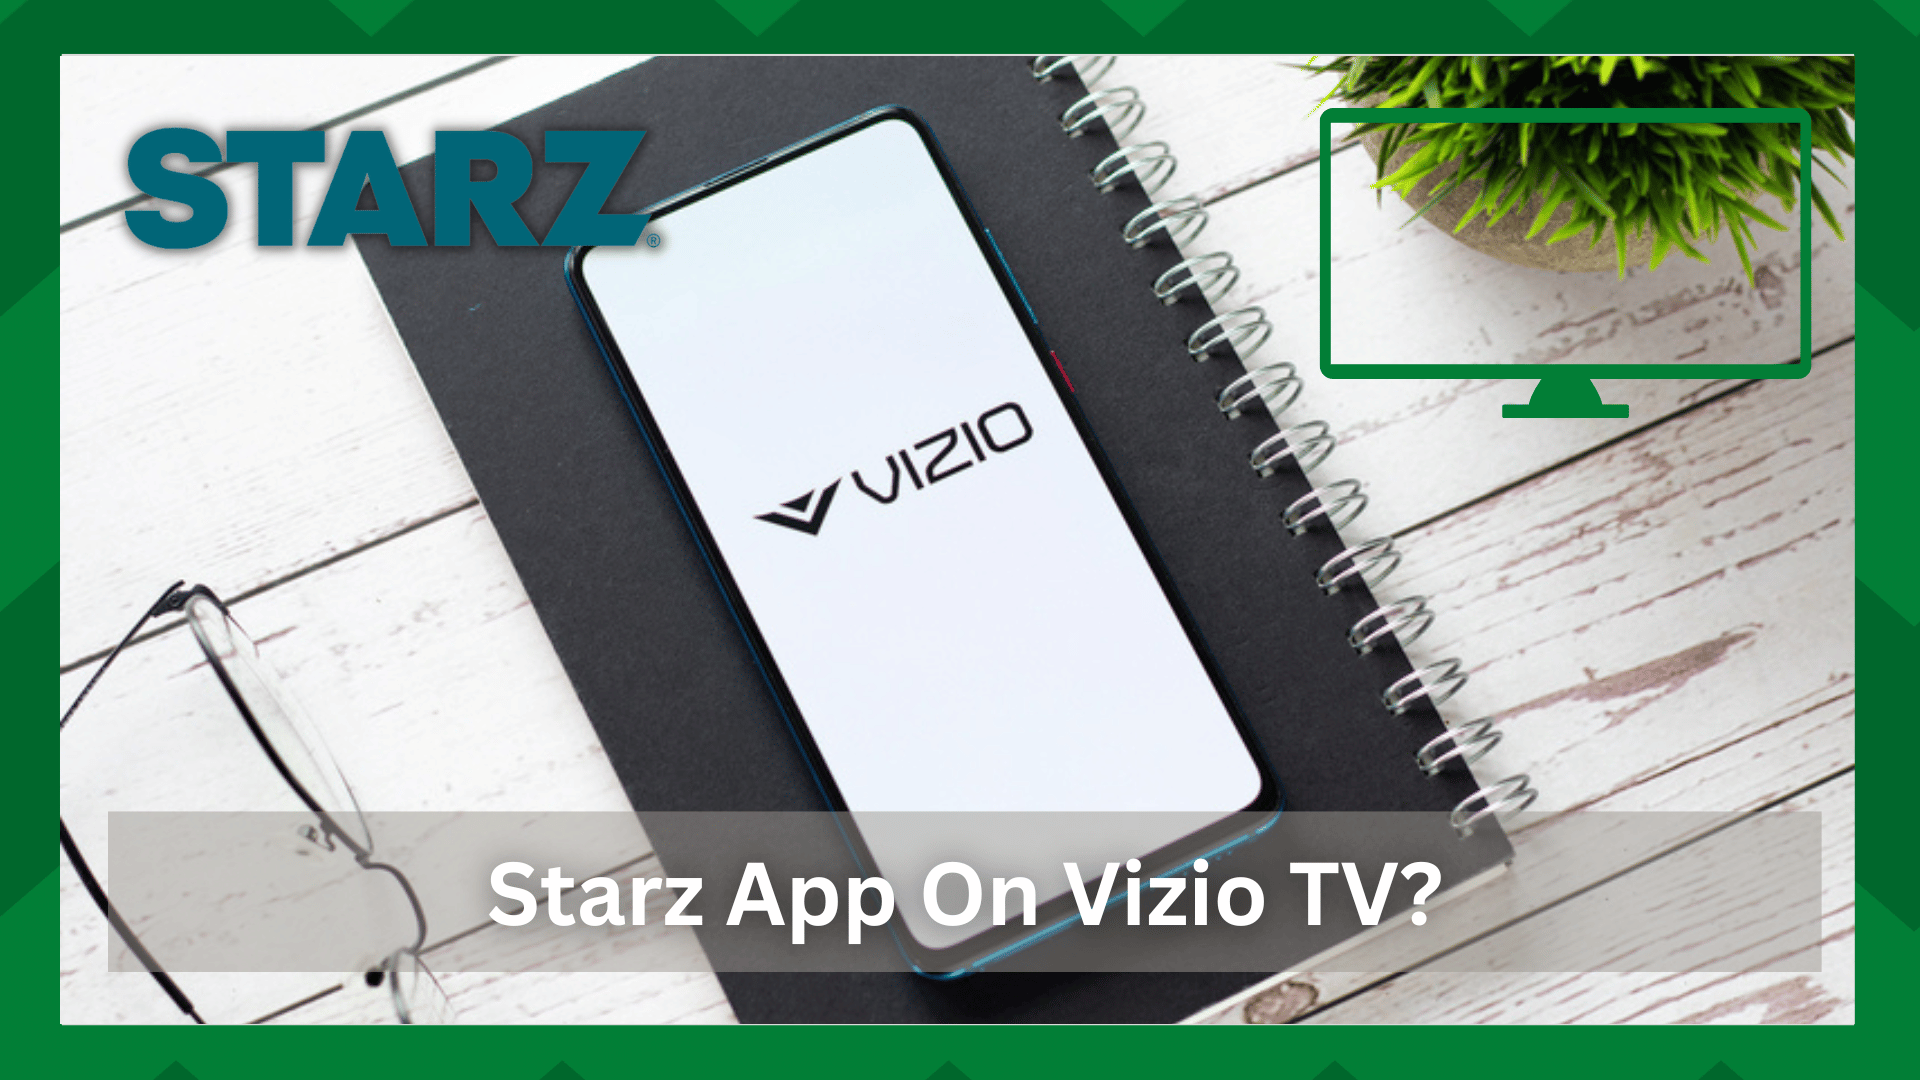 starz app on vizio tv